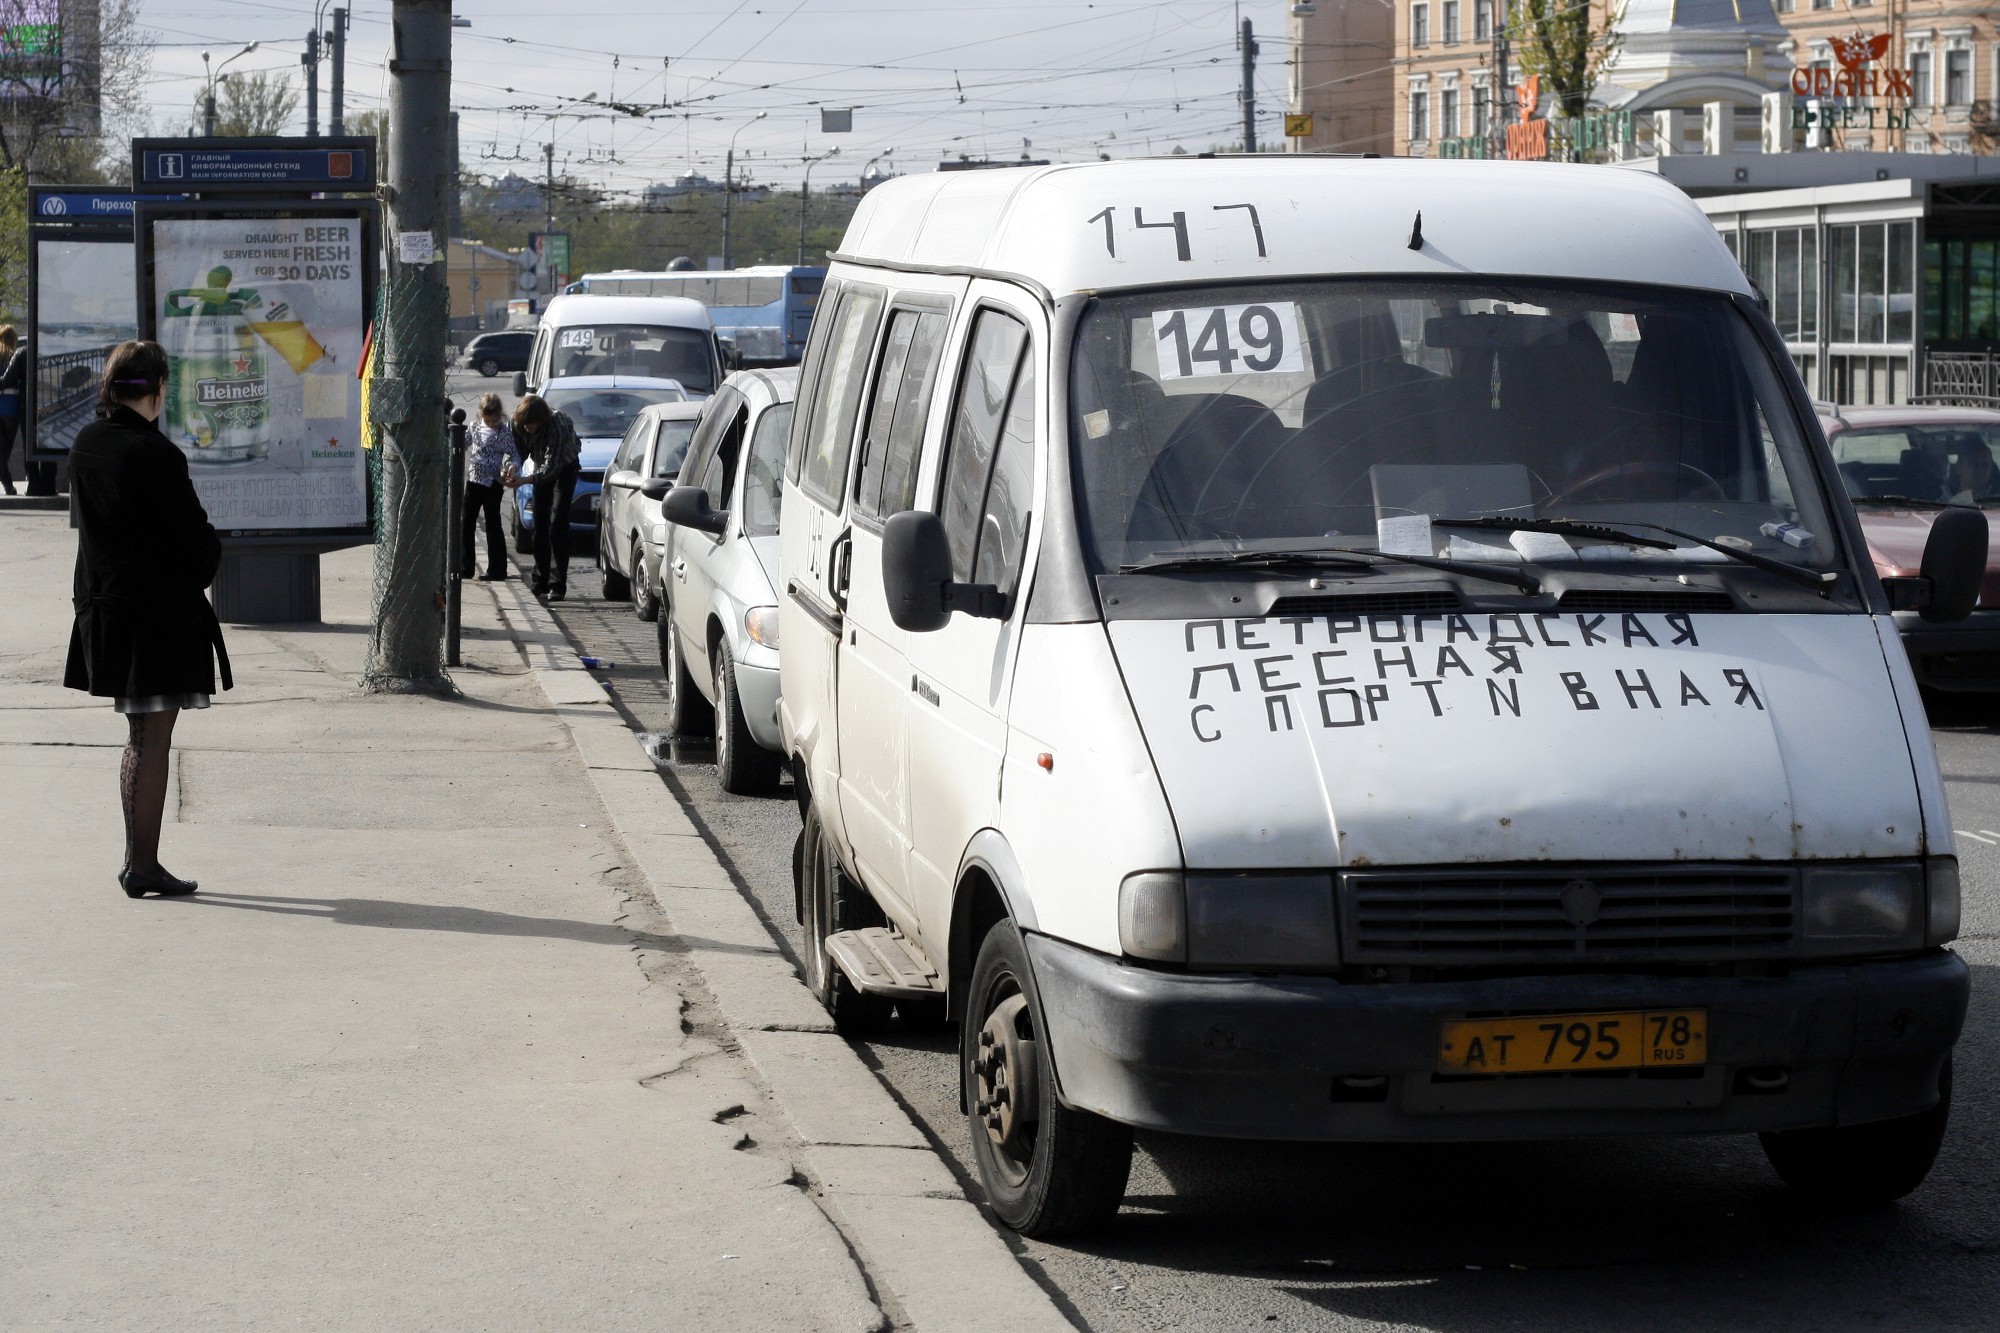 Перевозка маршрутное такси. Маршрутное такси. ГАЗ 3221 маршрутка СПБ. Маршрутка 149 Волгоград. Фото 149 маршрутки.